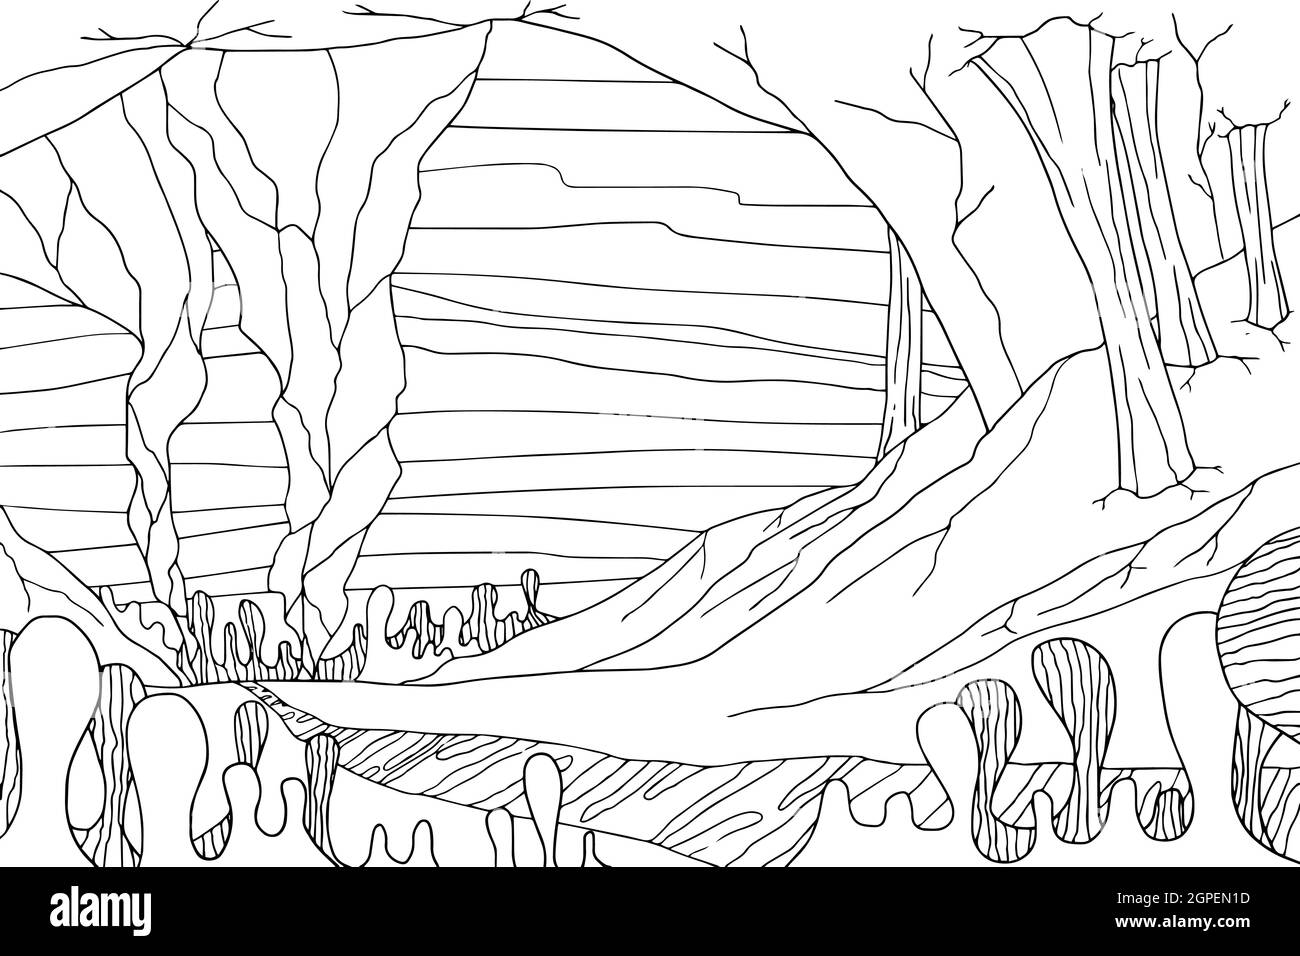 Doodle Alien Fantasy Landschaft mit großen Felsen Malvorlagen für Erwachsene. Fantastische psychedelische Grafik. Vektor von Hand gezeichnet einfach flach illustrat Stock Vektor